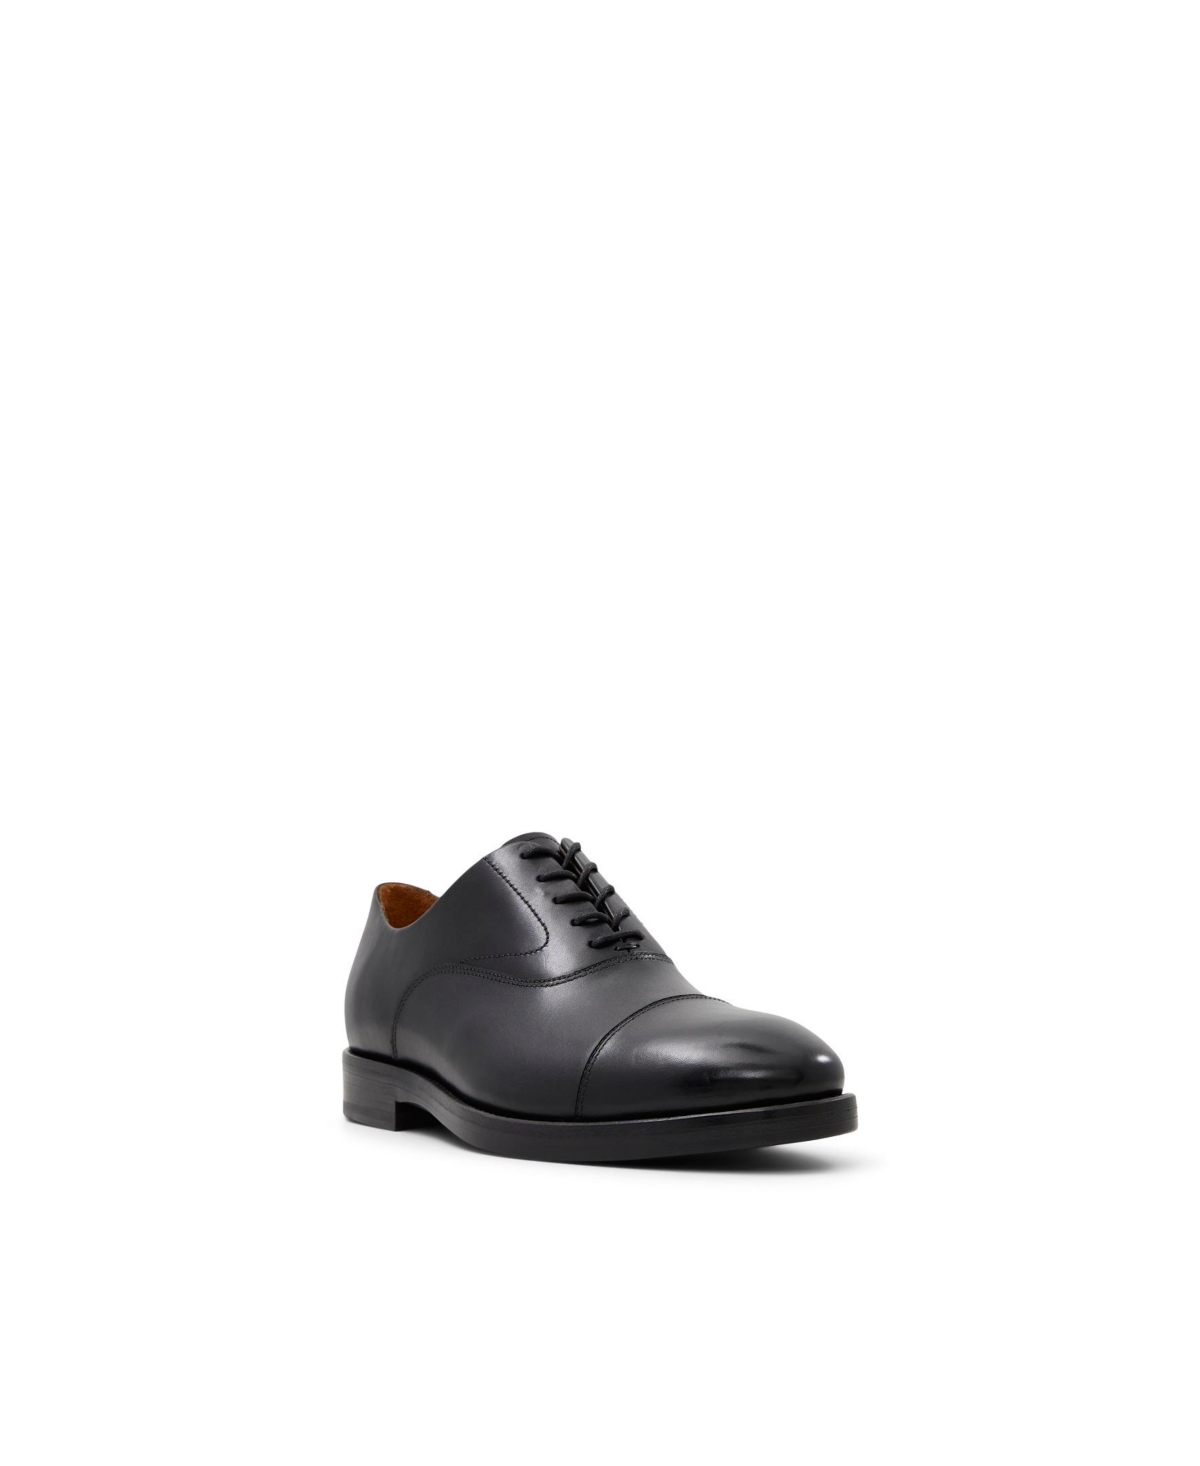 Men's Carnegie Lace Up Oxford Dress Shoes - Black